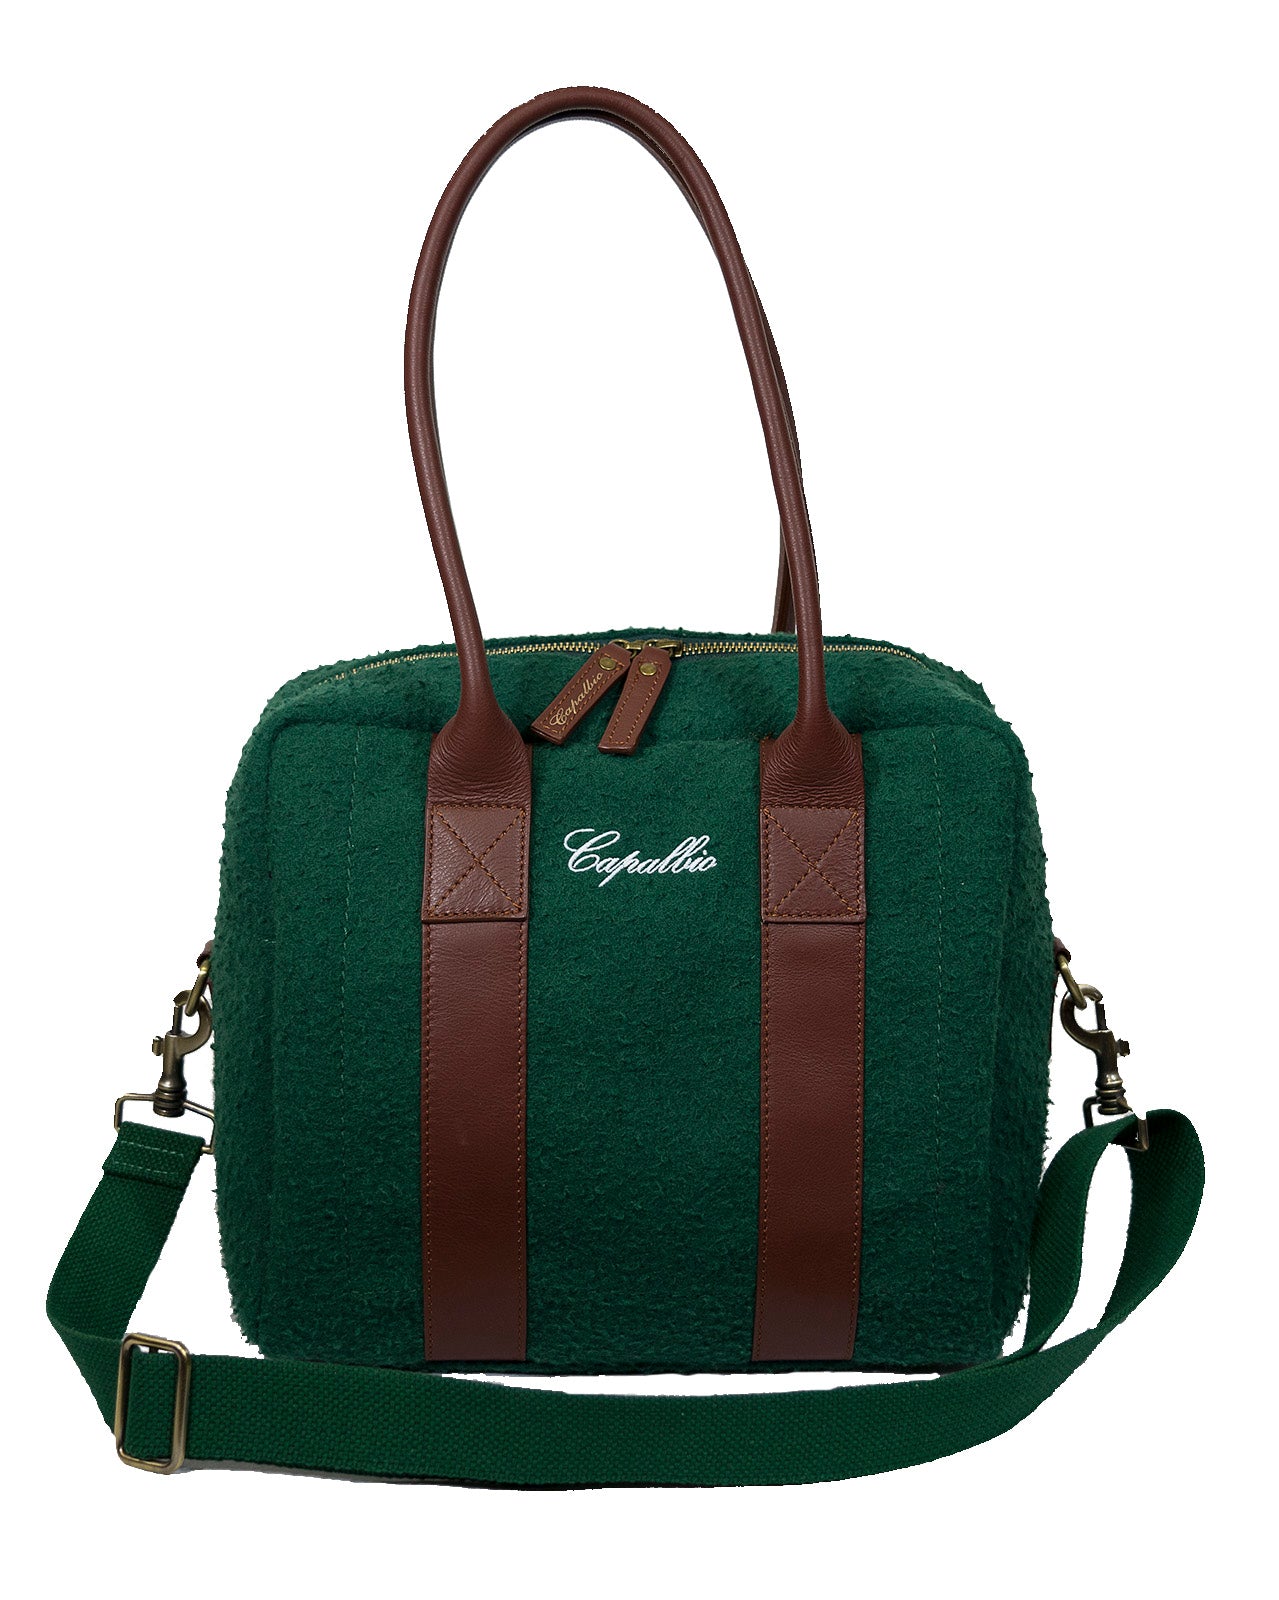 Principina Woman Bag in Cotton Canvas - Green